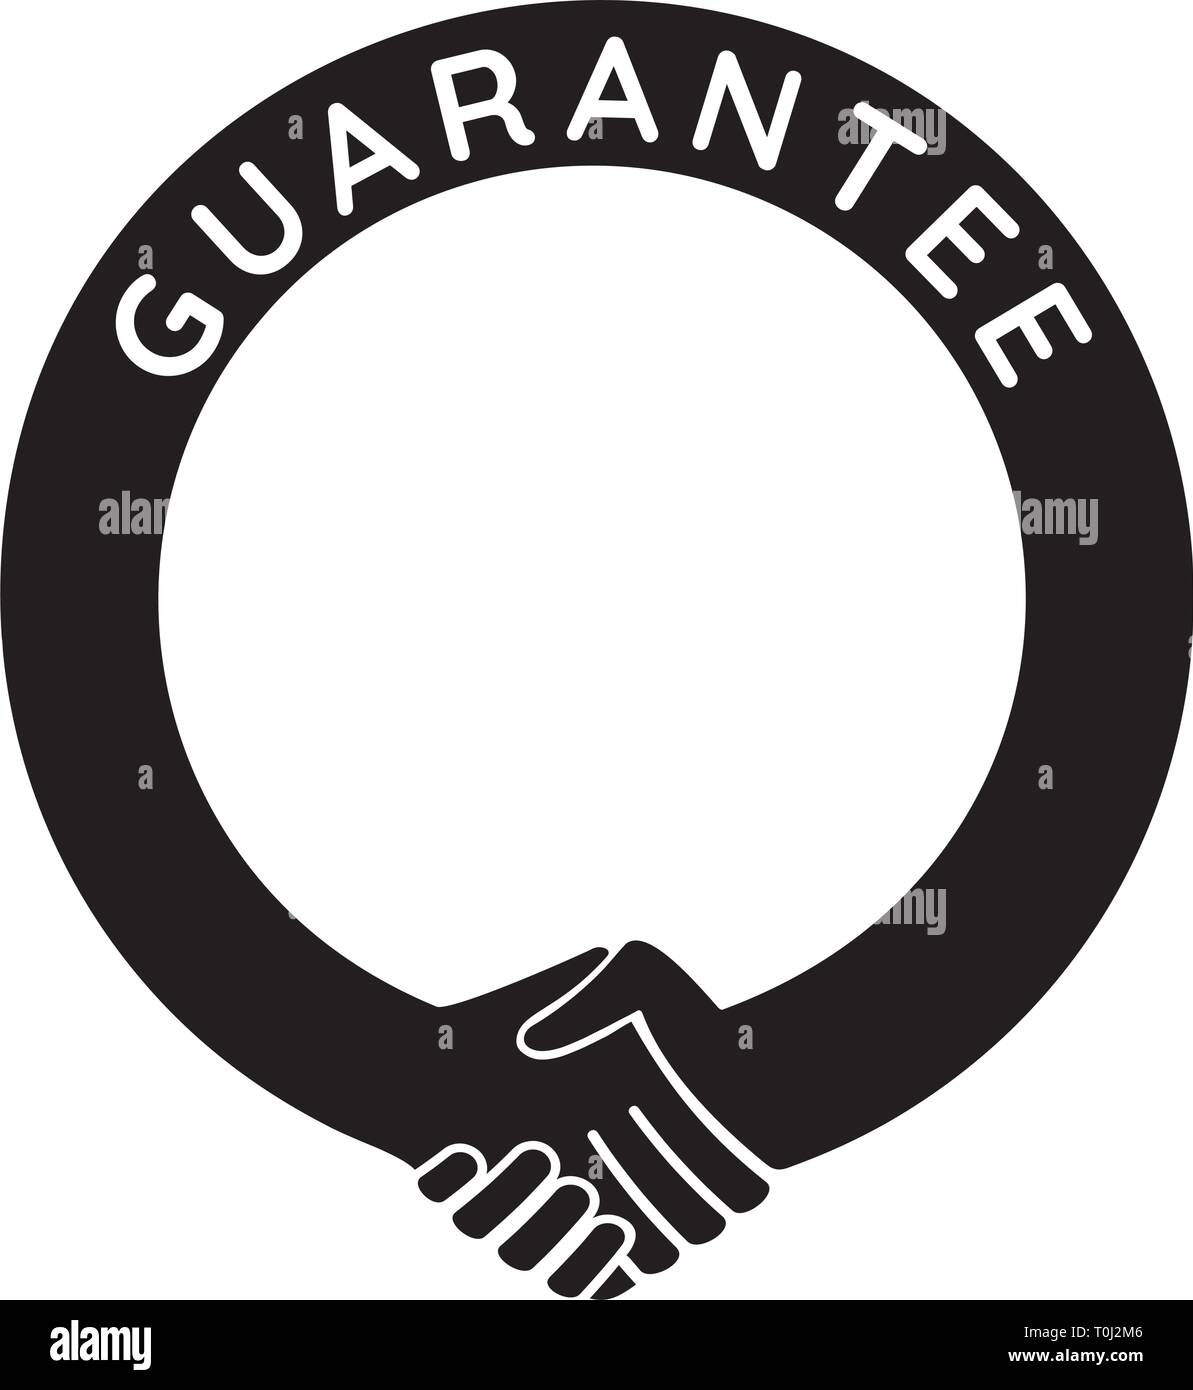 Garanzia - round modello di handshake, mettere qualsiasi numero o testo nel telaio Illustrazione Vettoriale